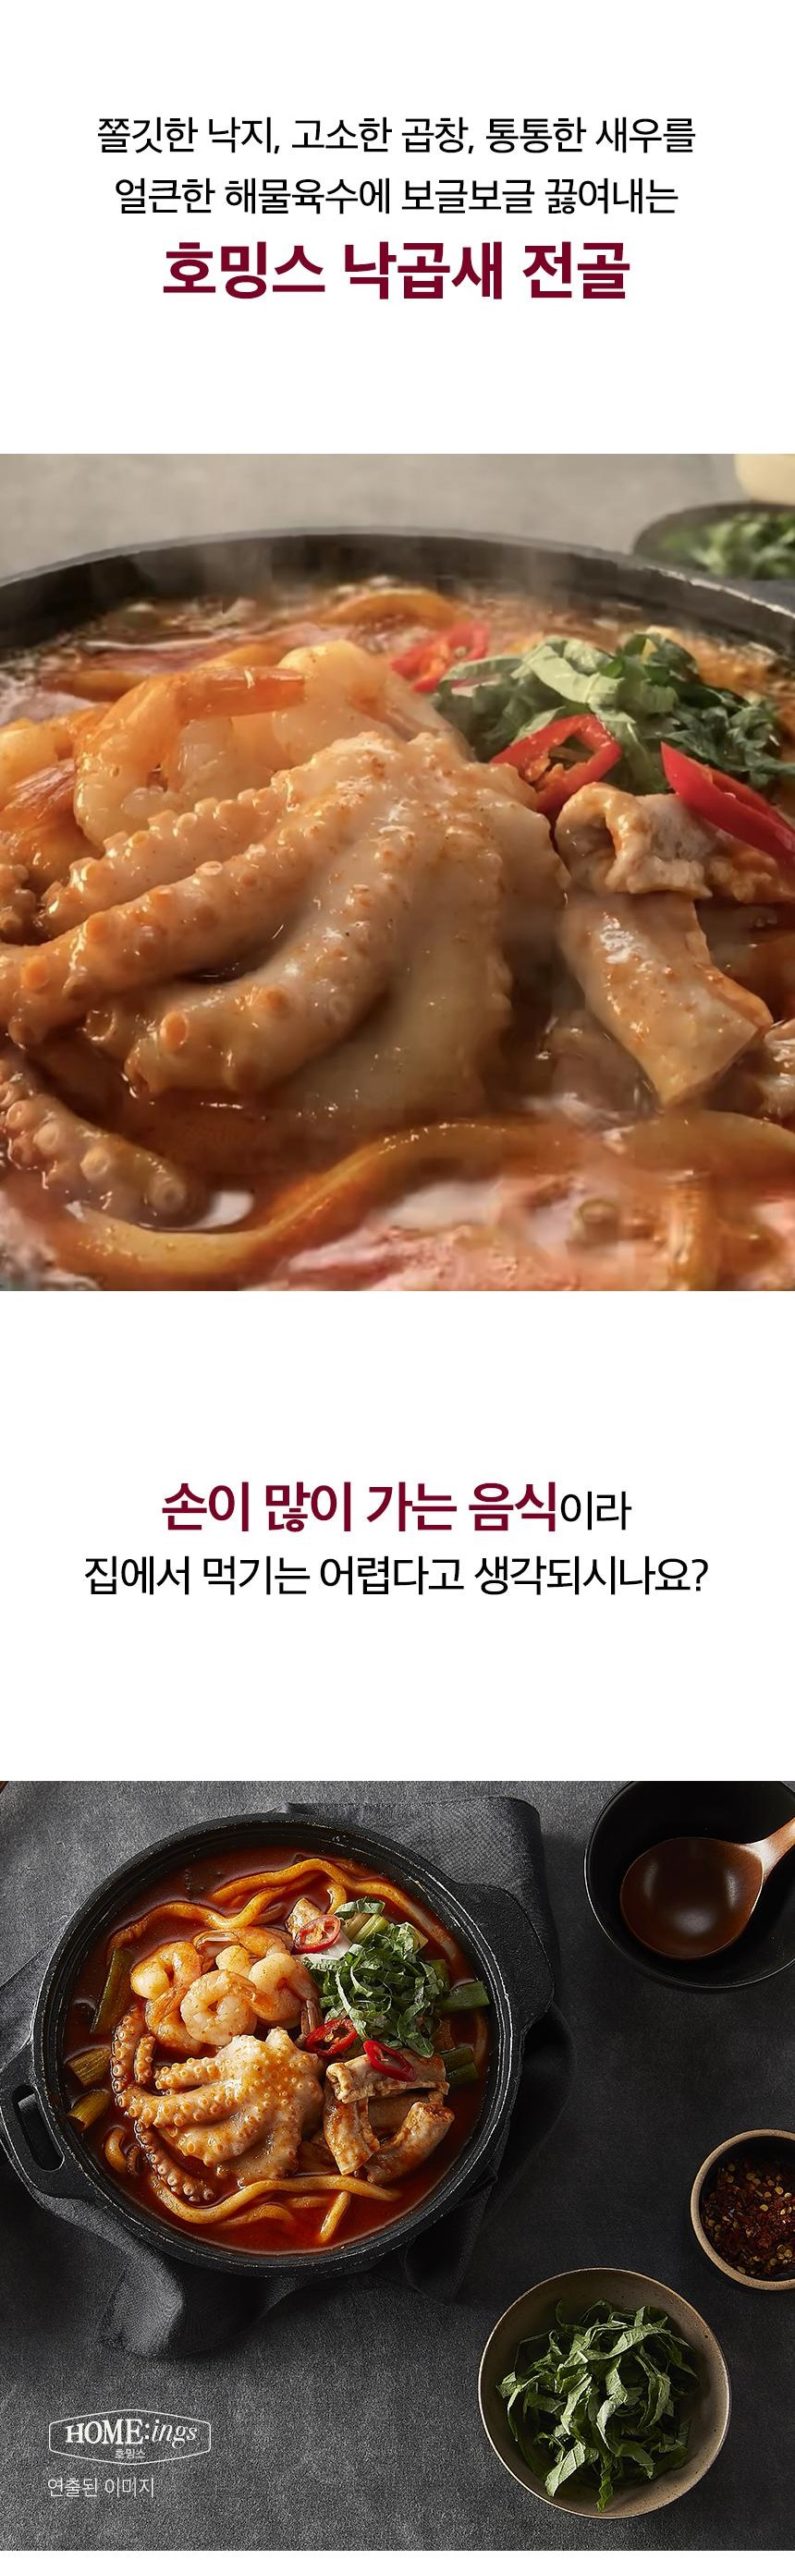 韓國食品-[CJO] Home:ings Octopus Tripe Shrimp 800g